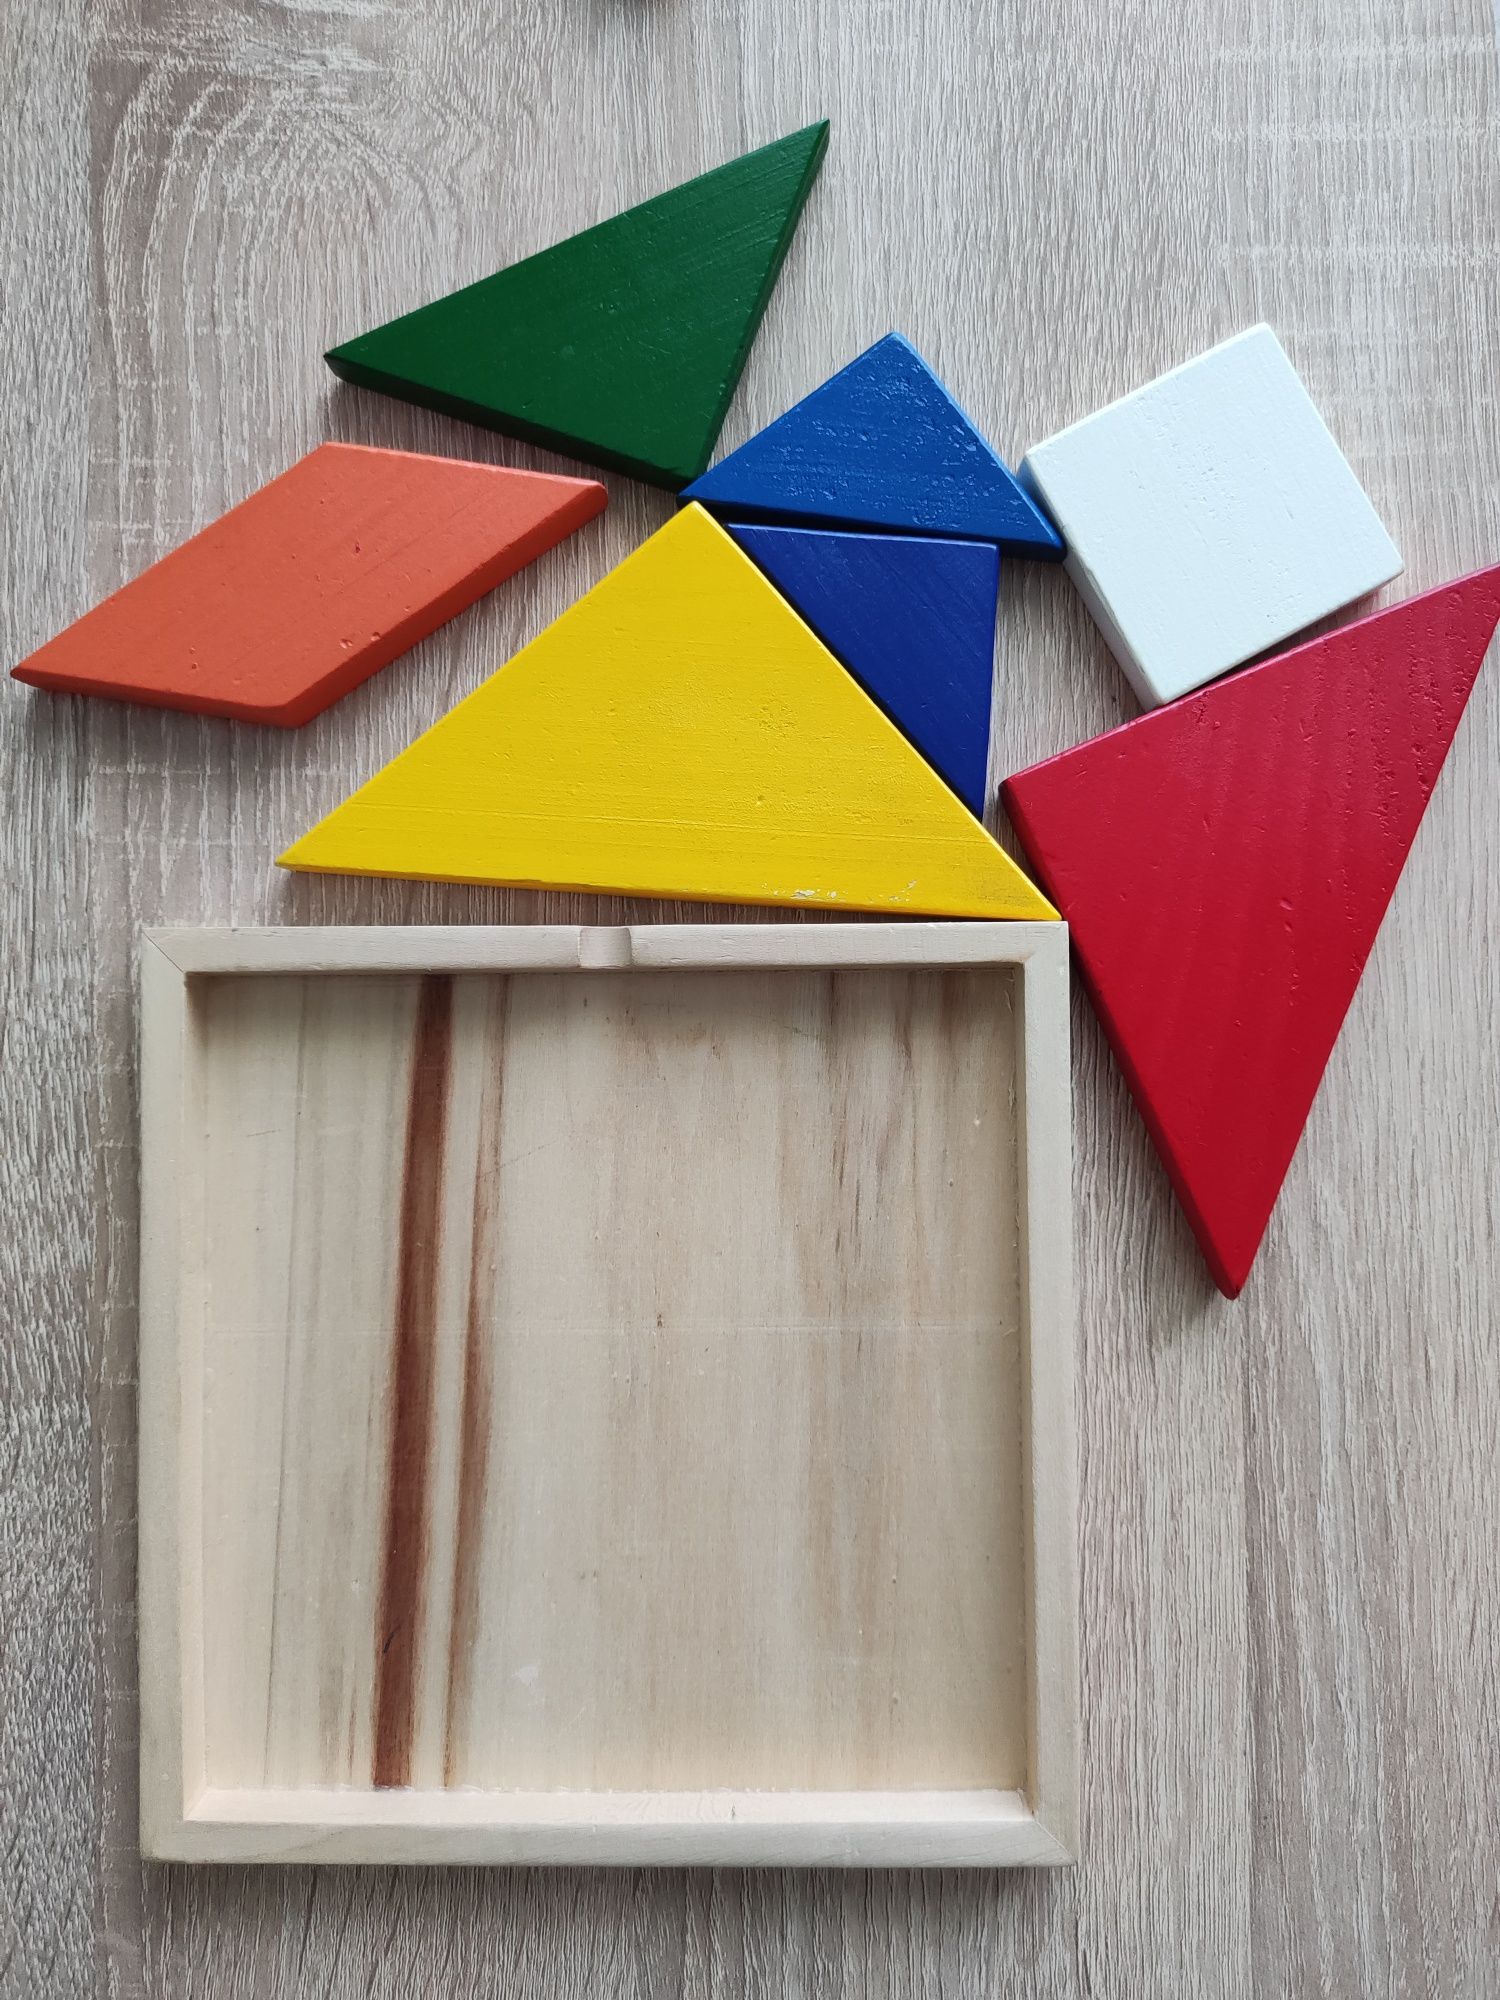 Танграм деревянная геометрическая головоломка